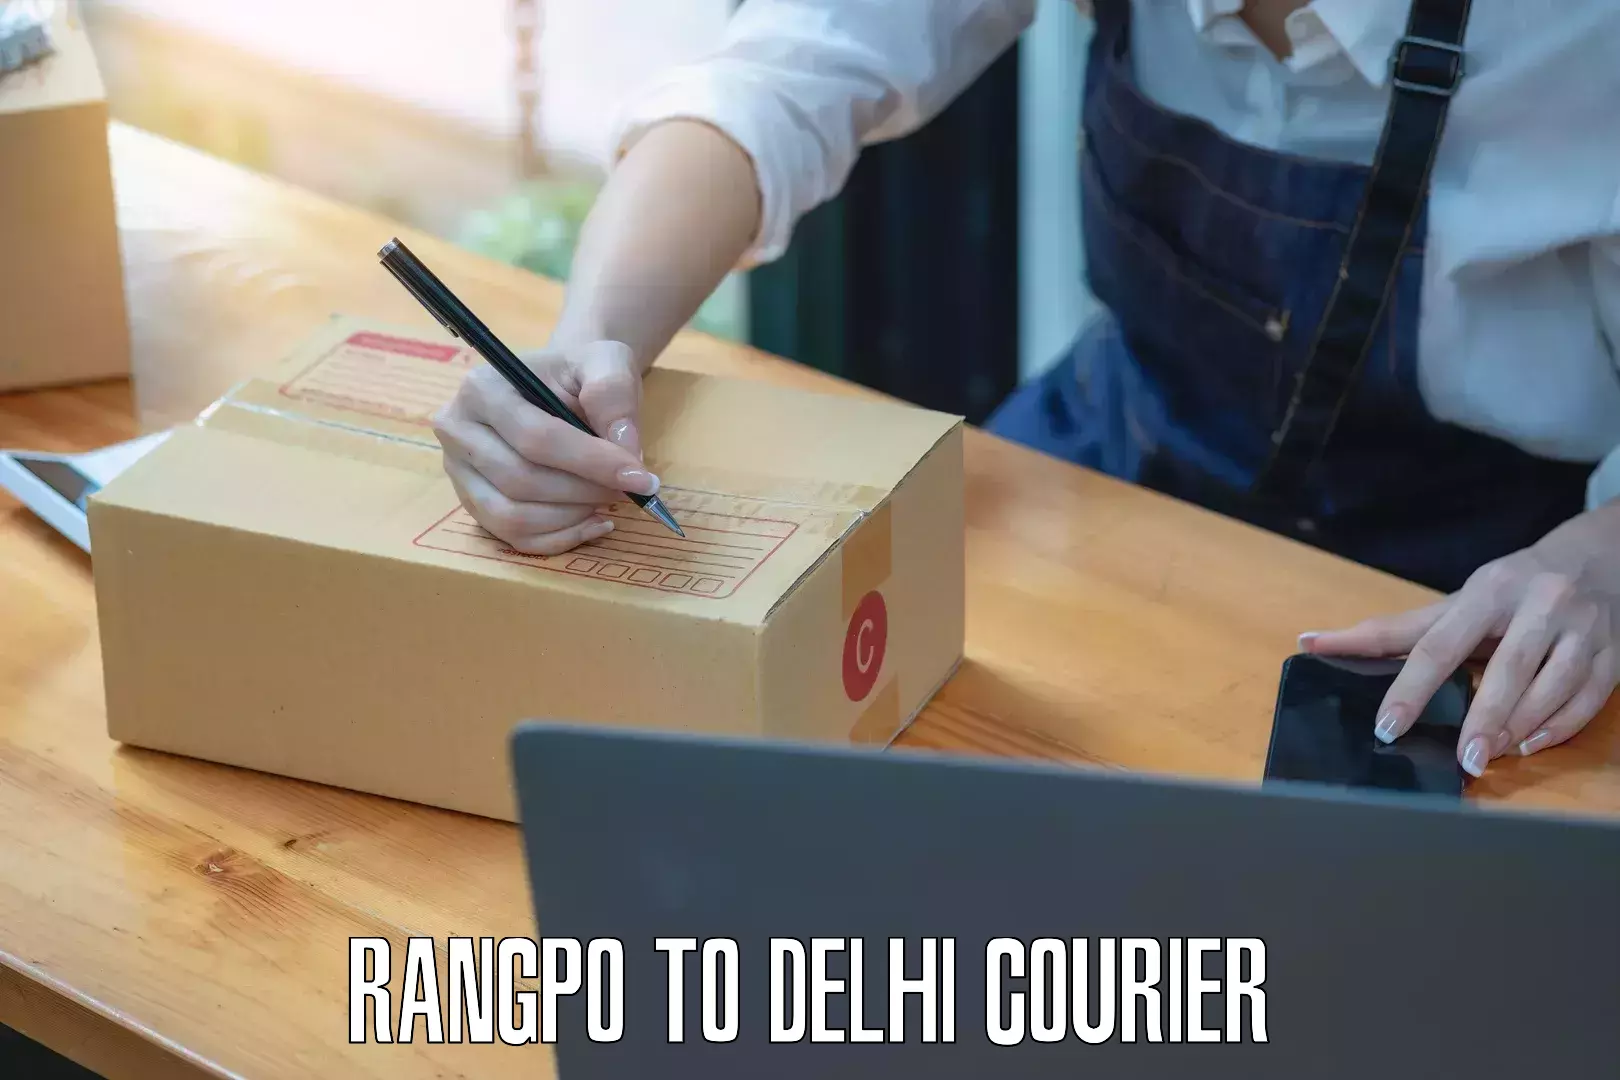 Courier service comparison Rangpo to Lodhi Road